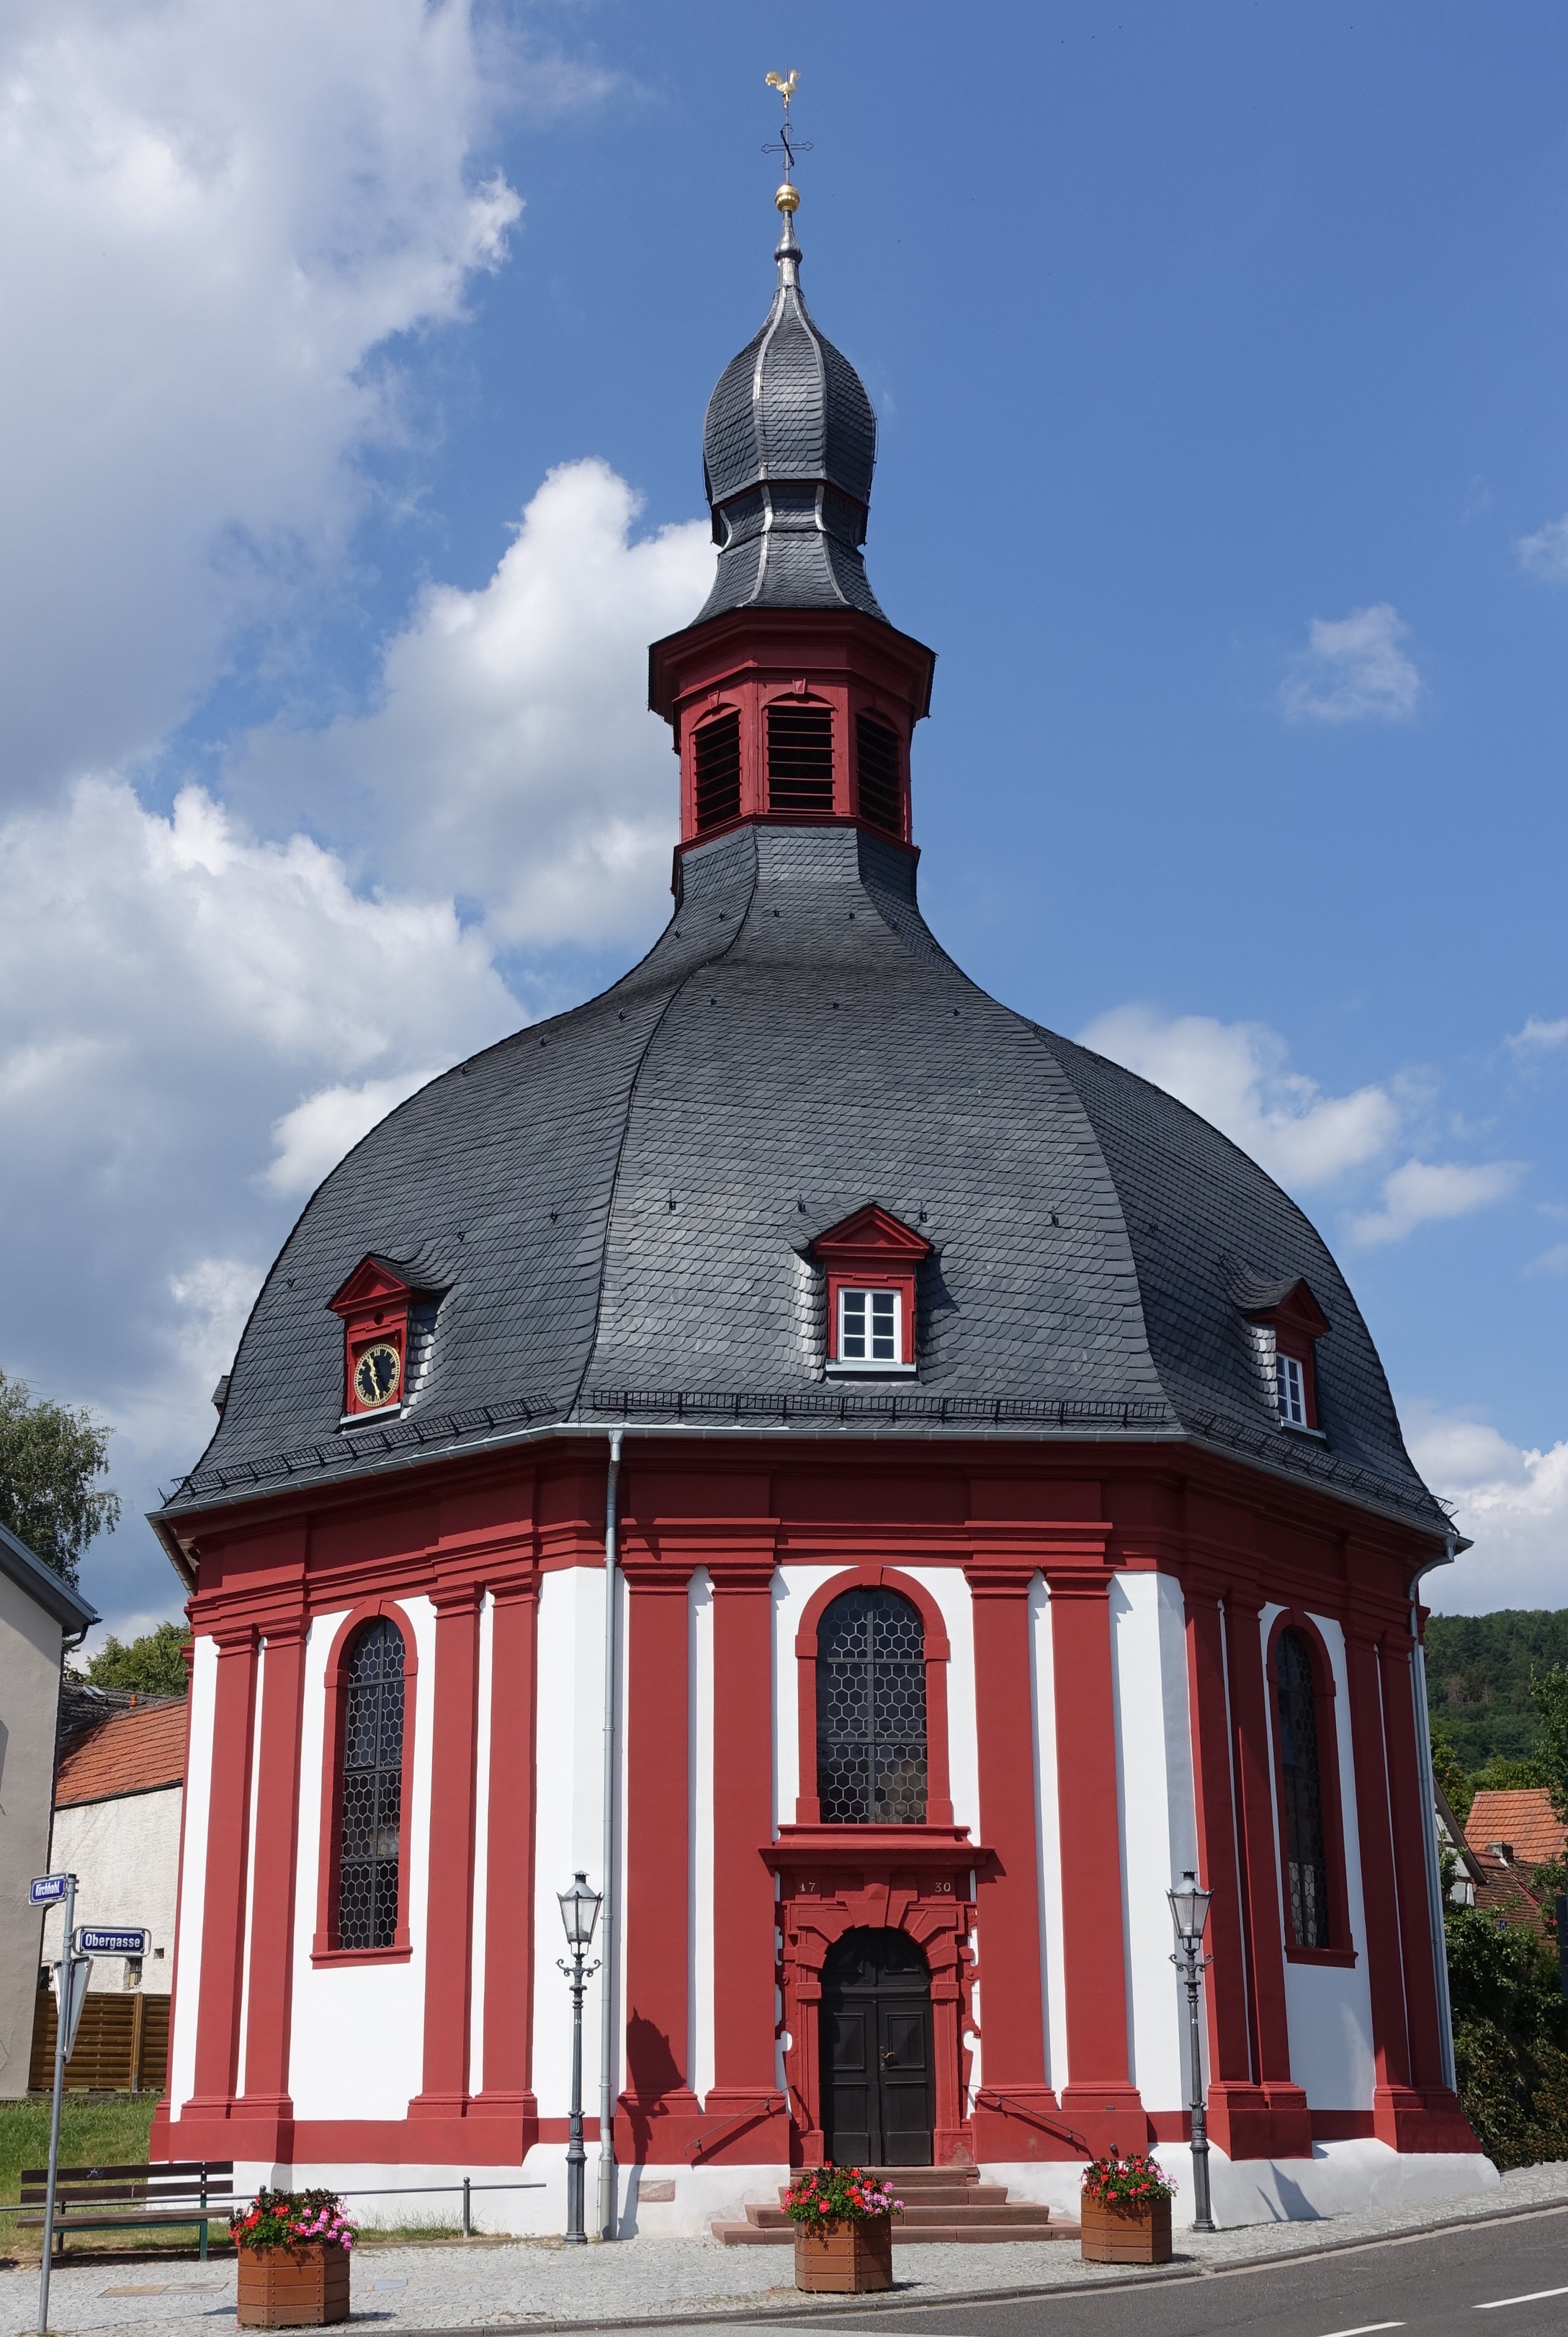 Die Nauroder Kirche ist ein Schmuckstück. Sie wurde unter der Leitung von Johann Jakob Bager erbaut. Am 20. August 1730 wurde sie eingeweiht. Der oktogone Zentralbau im barocken Stil lädt zum Verweilen ein. Sie wirkt, obgleich sie achteckig ist, rund, da 